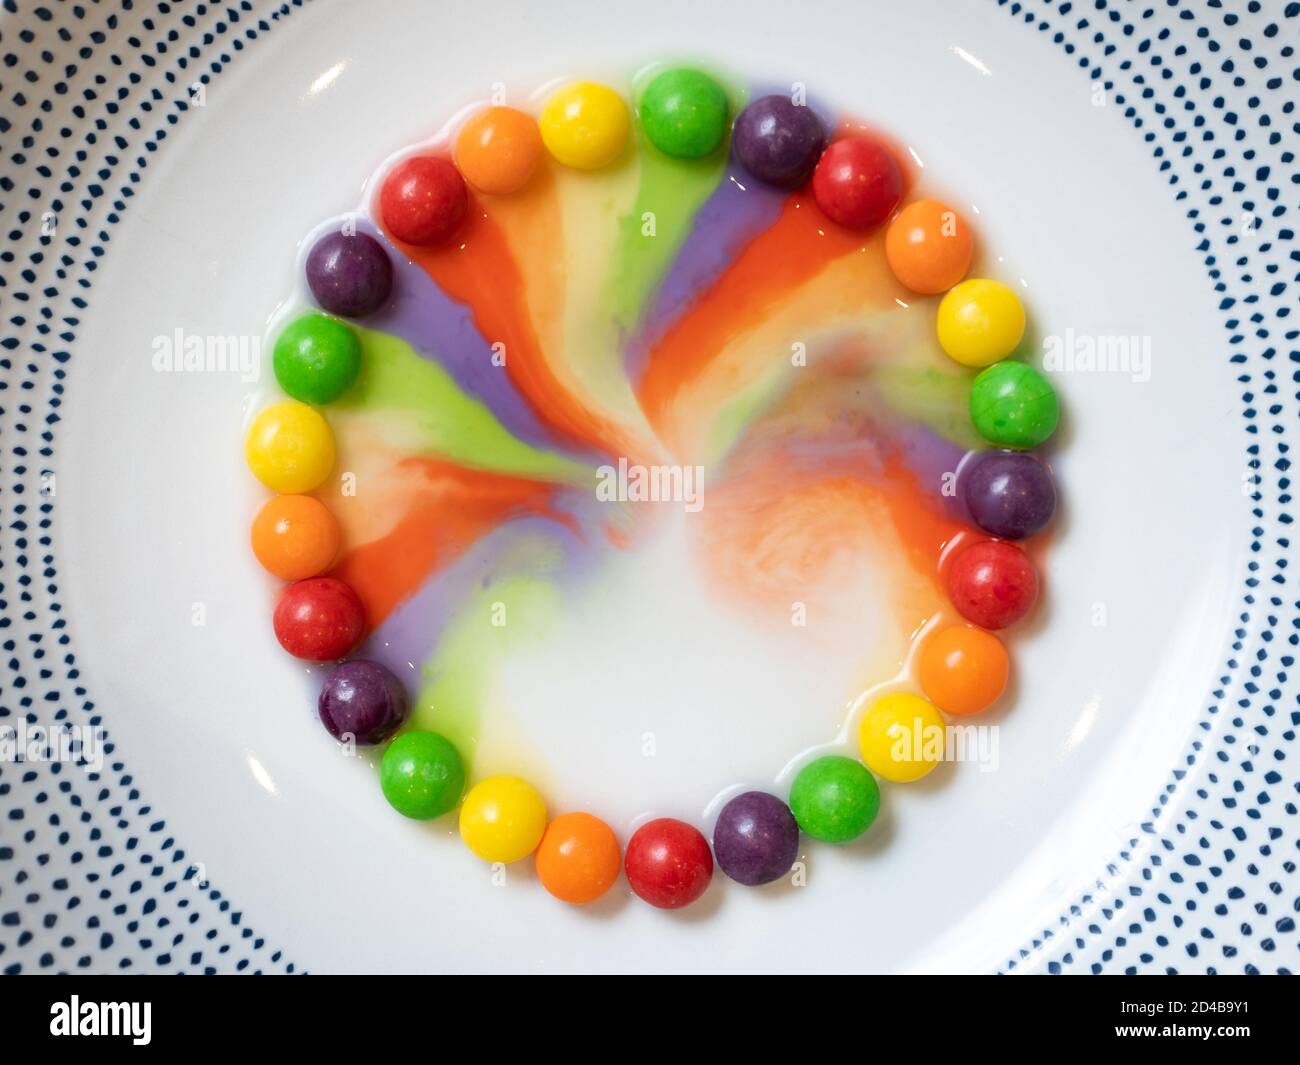 Un cercle de petits bonbons dans un bol blanc avec les couleurs se sont lentement affichées au milieu Banque D'Images